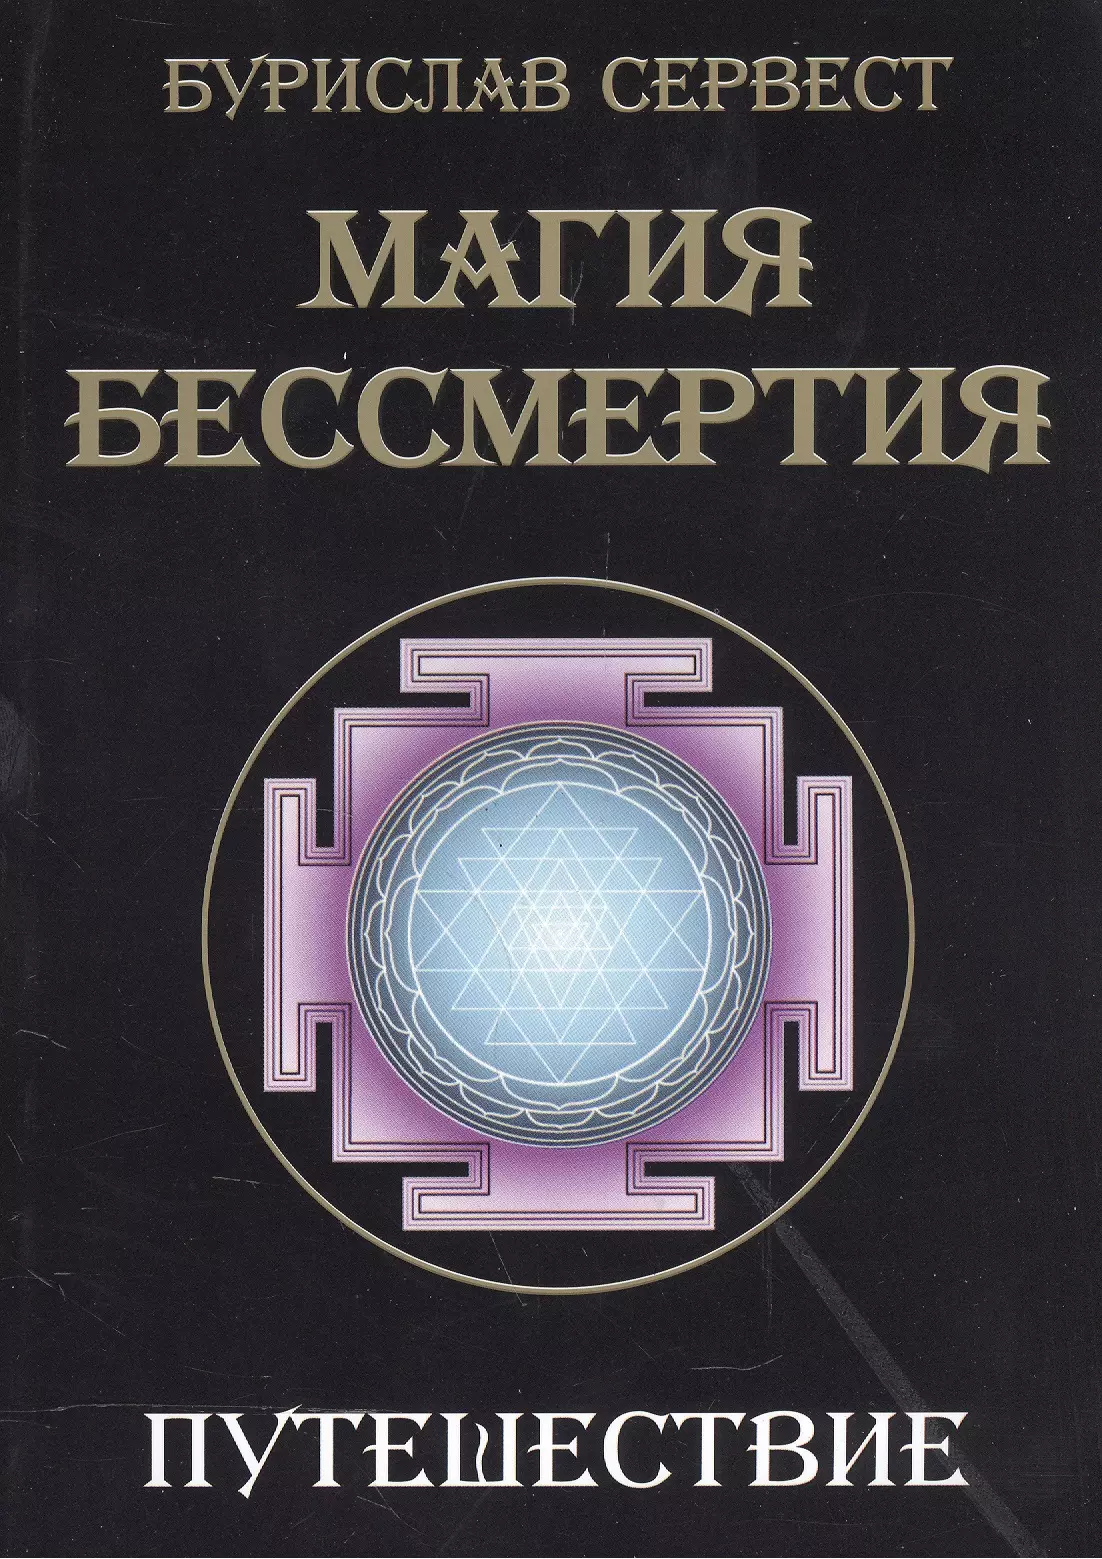 сервест бурислав магия бессмертия преображение Сервест Бурислав Магия бессмертия. Путешествие